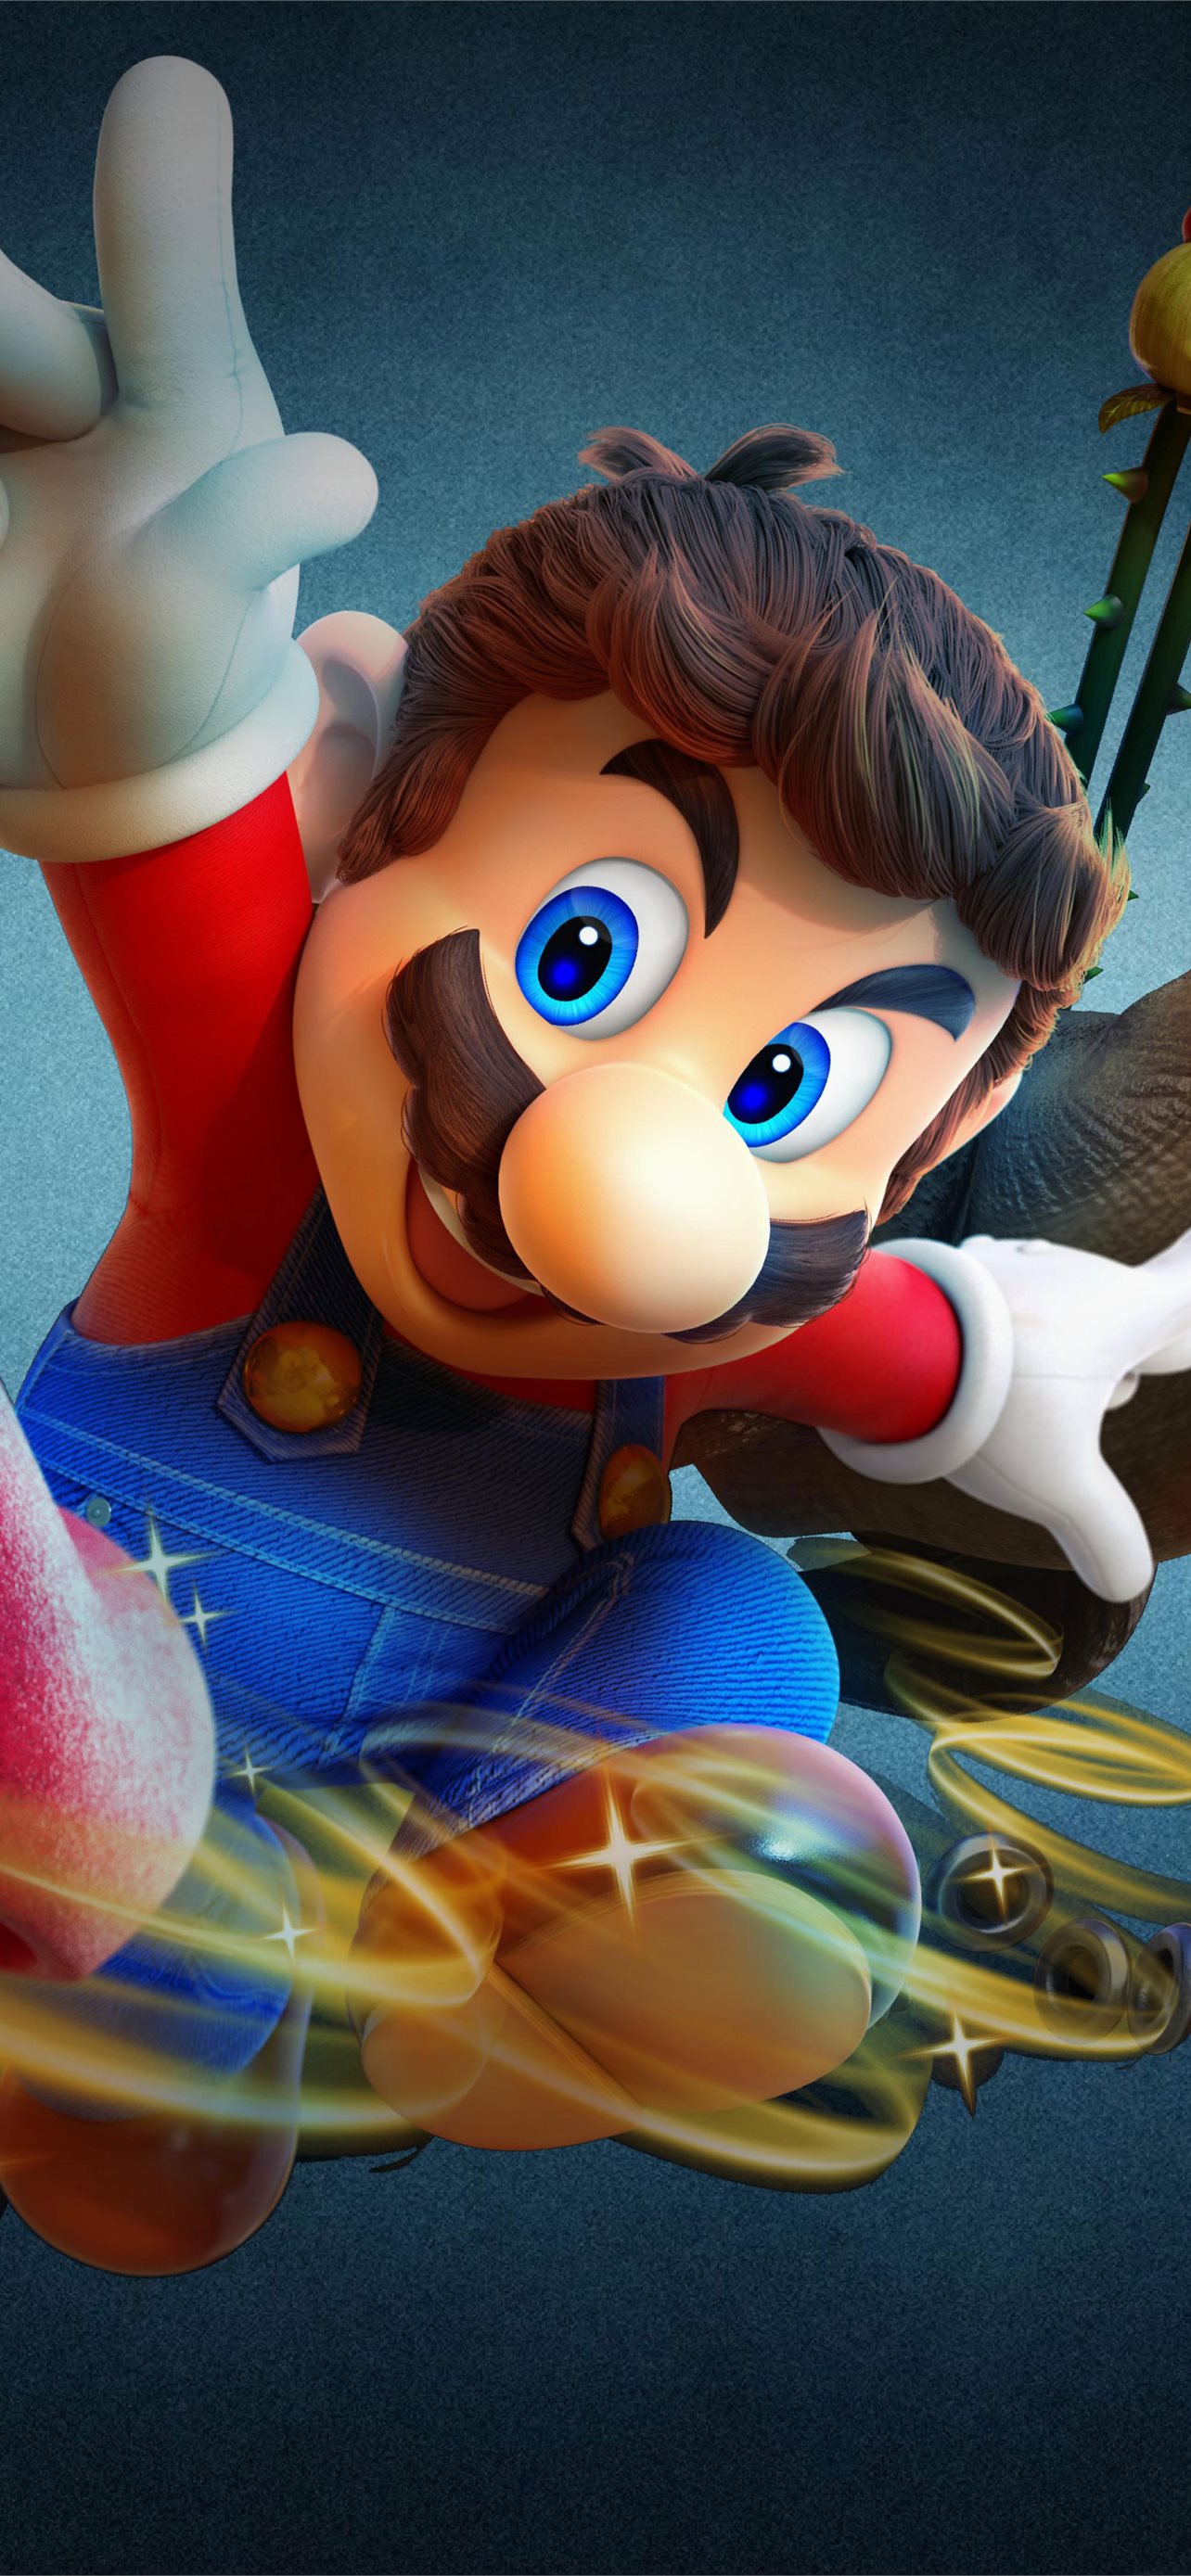 Tải miễn phí hình nền siêu sao Mario Galaxy cho iPhone giúp bạn tạo nên một phong cách hoàn hảo cho chiếc điện thoại của mình. Hình ảnh tươi sáng, đầy màu sắc và hài hước sẽ làm cho bạn cảm thấy vô cùng thích thú và hứng thú khi sử dụng điện thoại của mình.